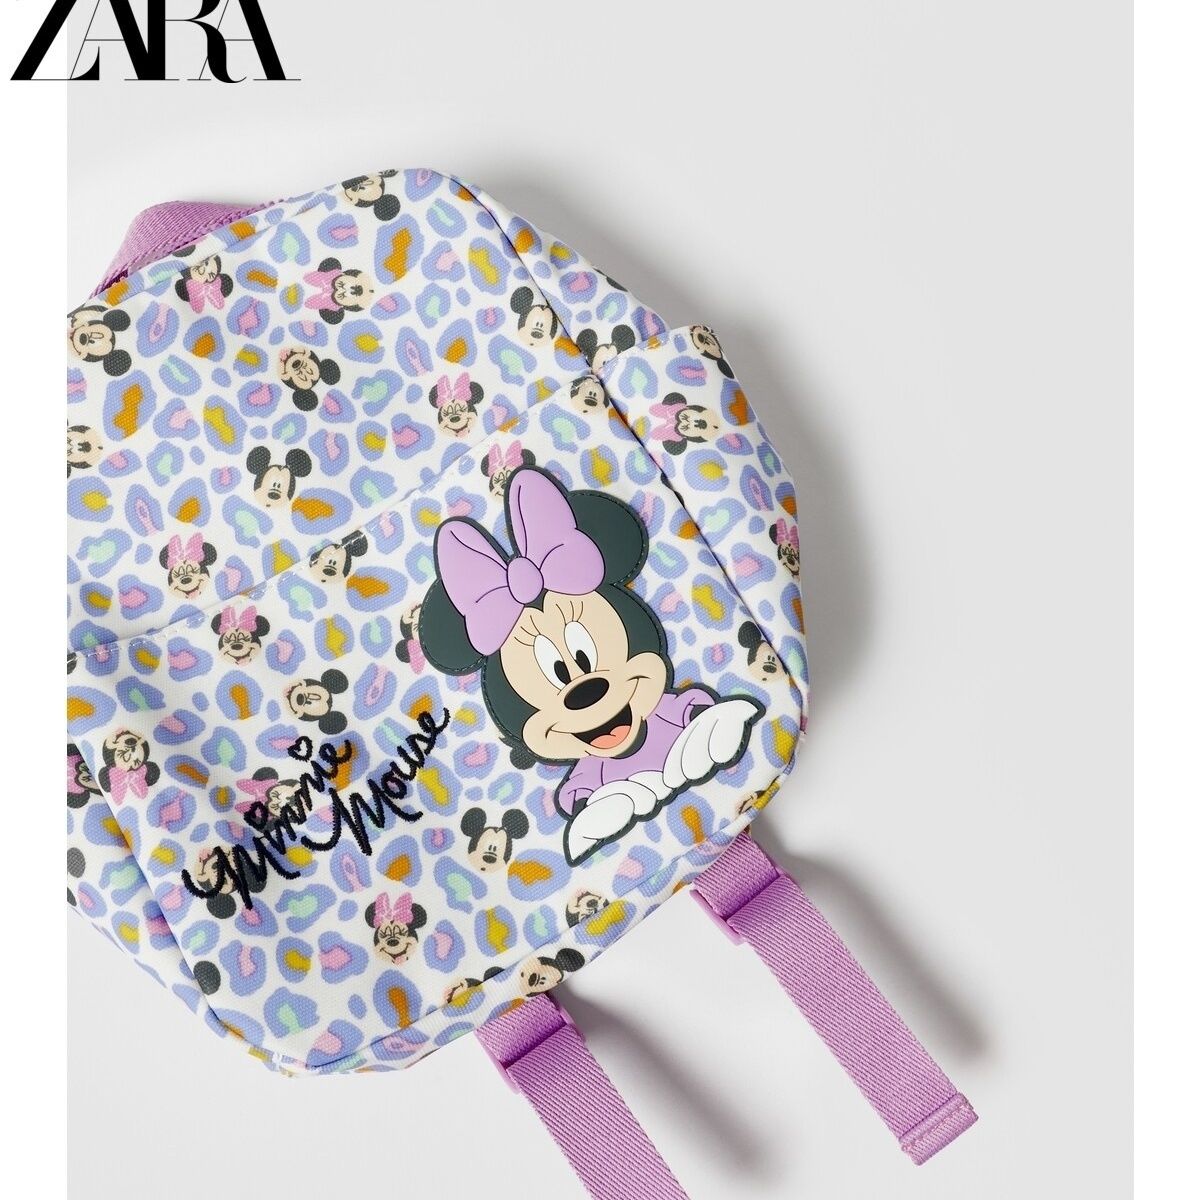 Zara x Mickey Mouse Kids Back pack